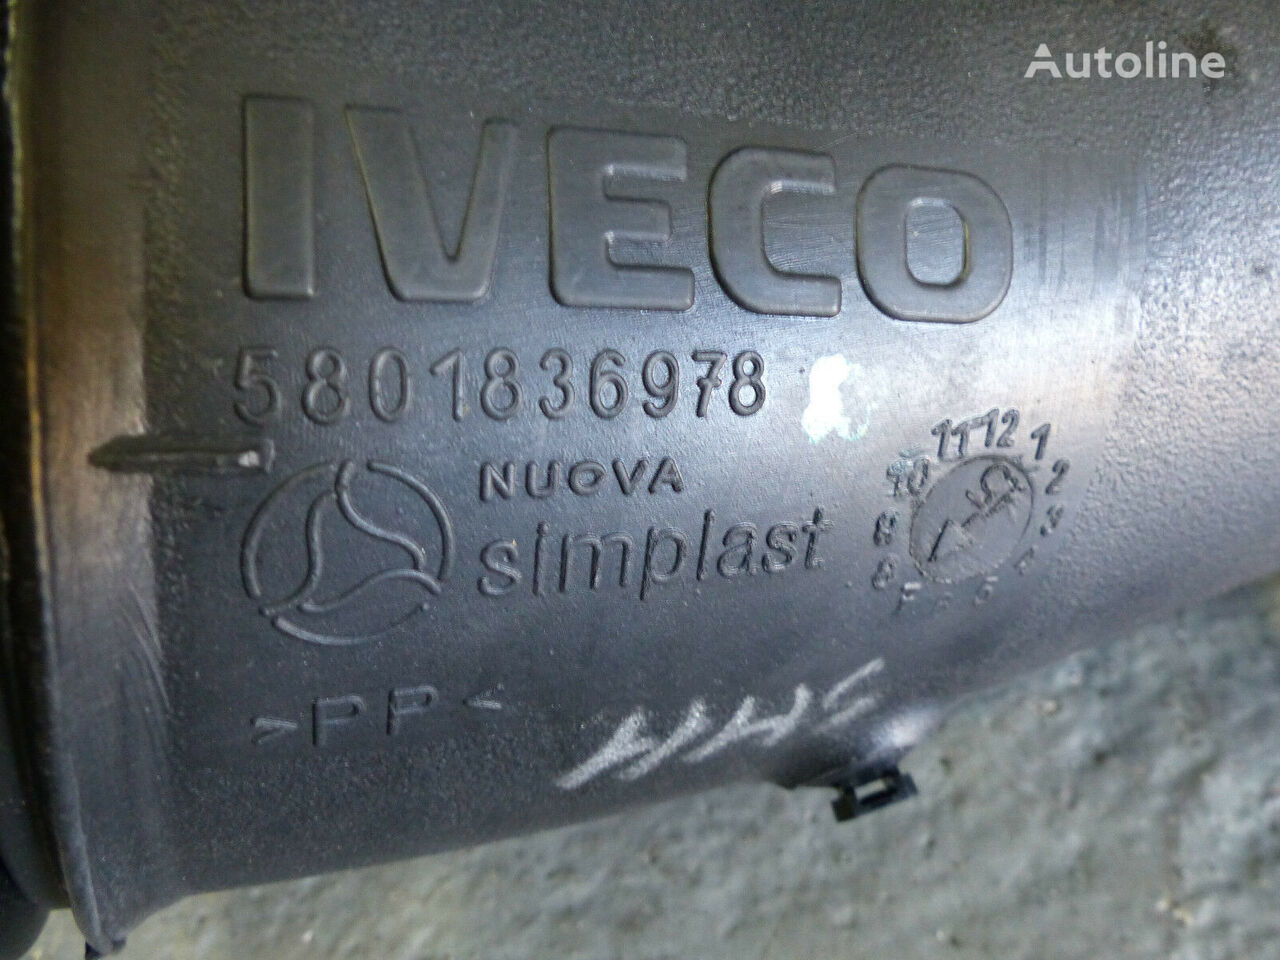 ahjulõõrid IVECO Saugleitung 5801836978 tüübi jaoks veoauto IVECO Eurocargo